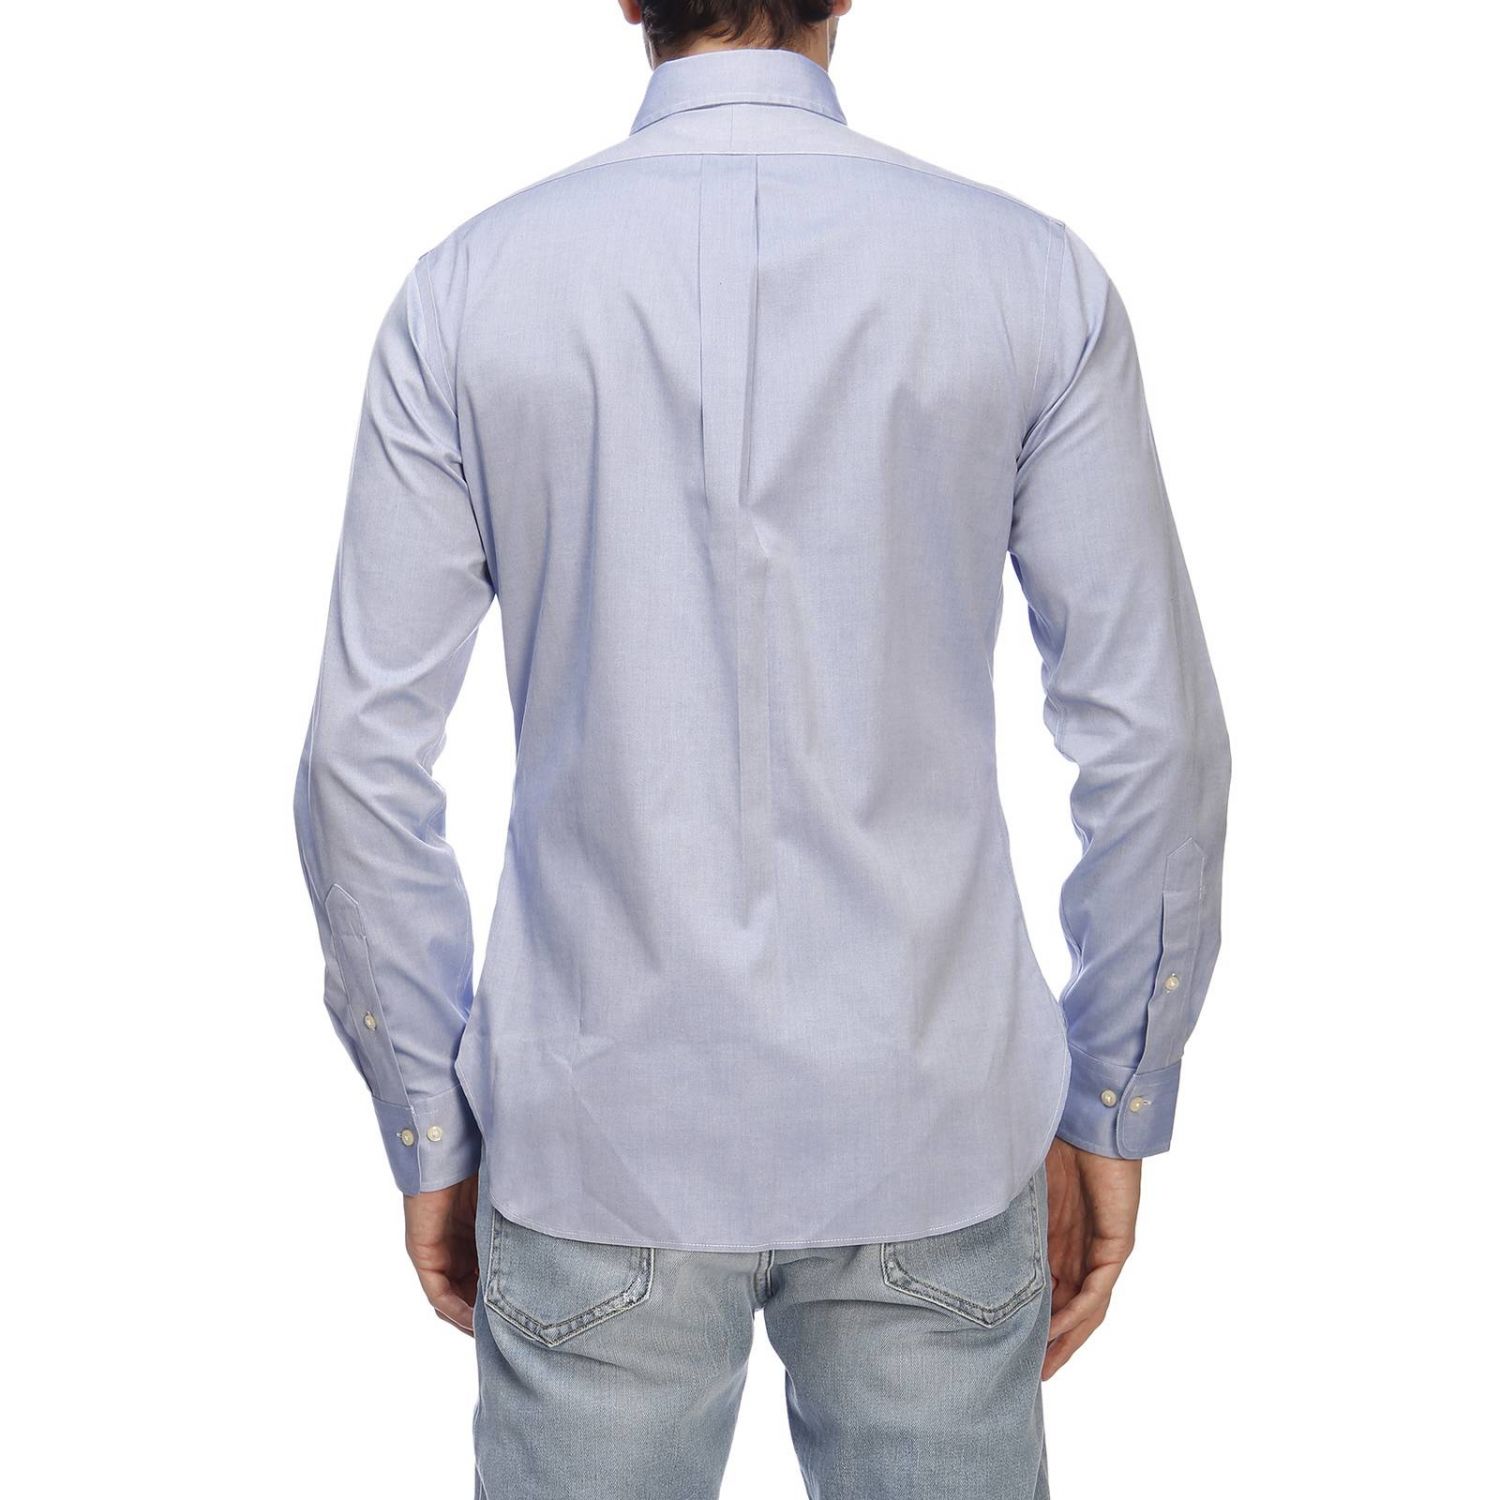 Polo Ralph Lauren Outlet: Shirt men | Shirt Polo Ralph Lauren Men ...